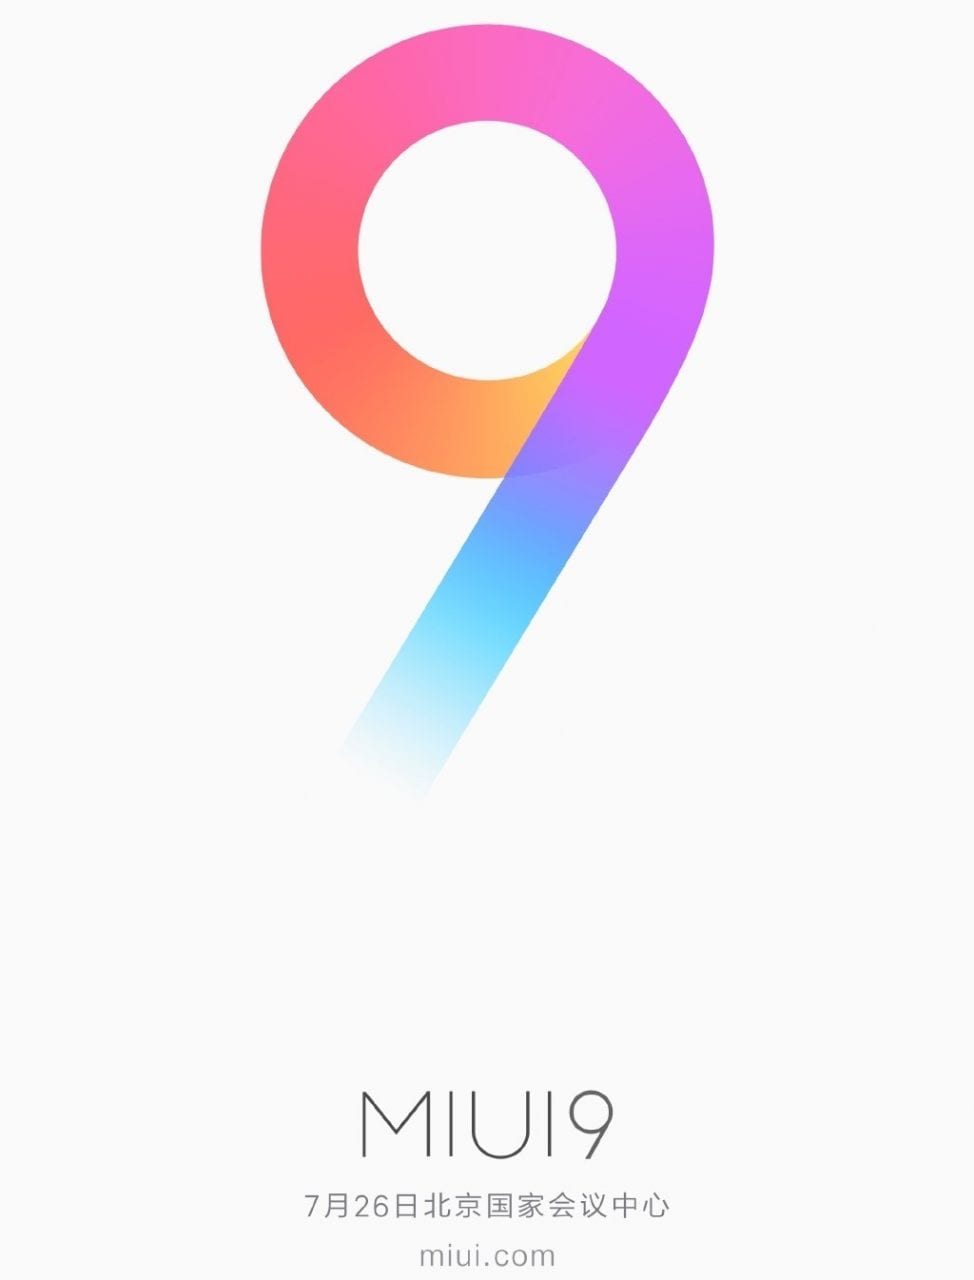 Doppio annuncio in casa Xiaomi: il 26 luglio verranno svelati ufficialmente MIUI 9 e Mi 5X (foto)